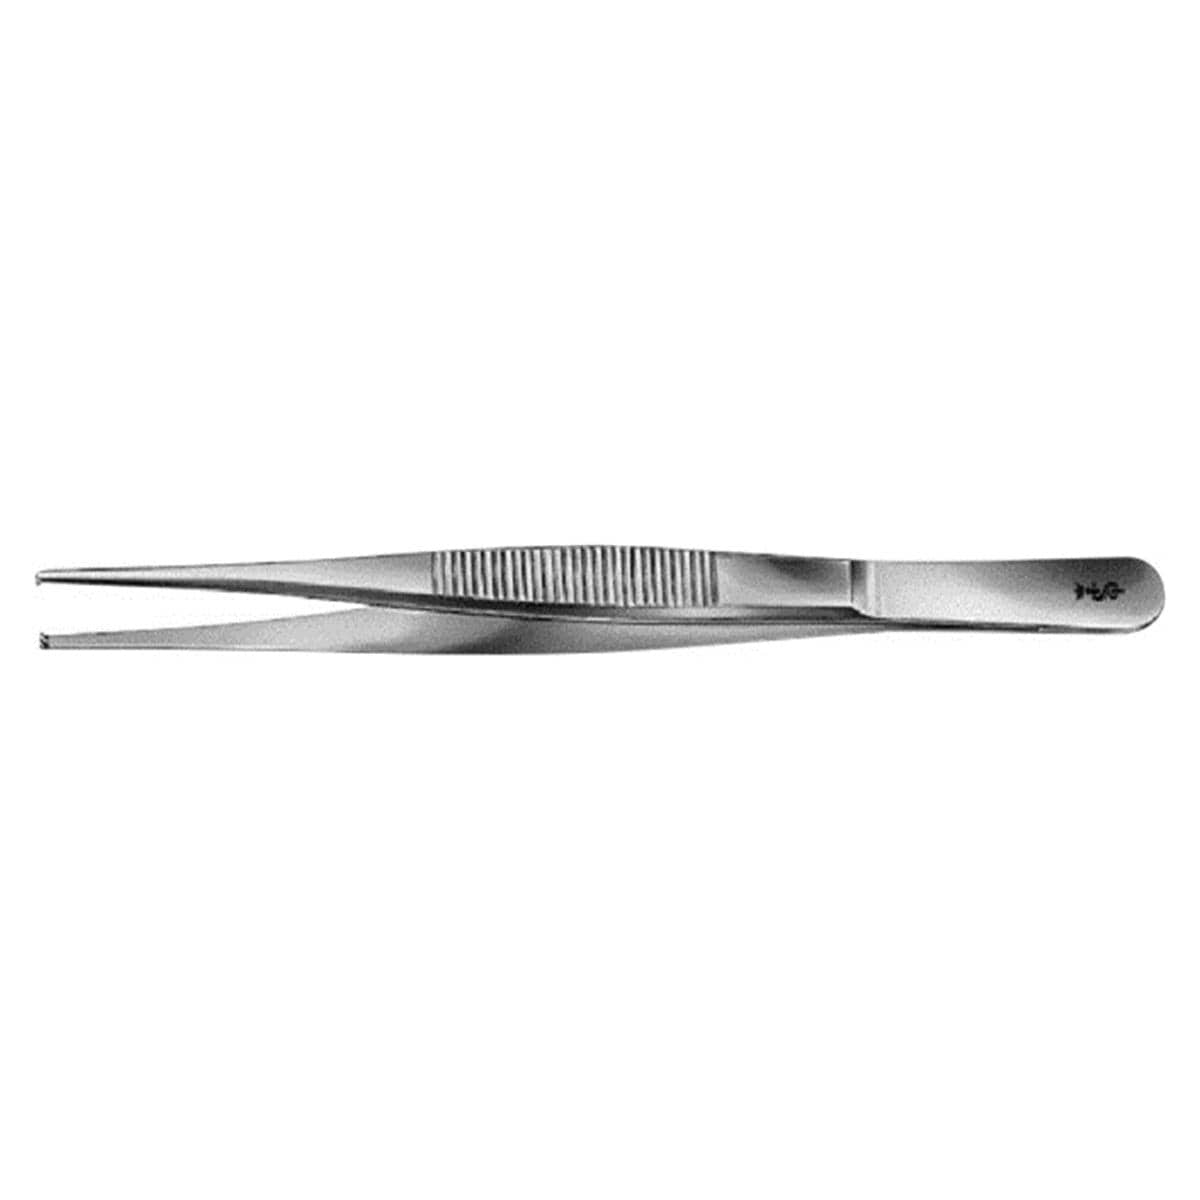 Pincet chirurgisch 1x 2 - BD537R, 14,5 cm